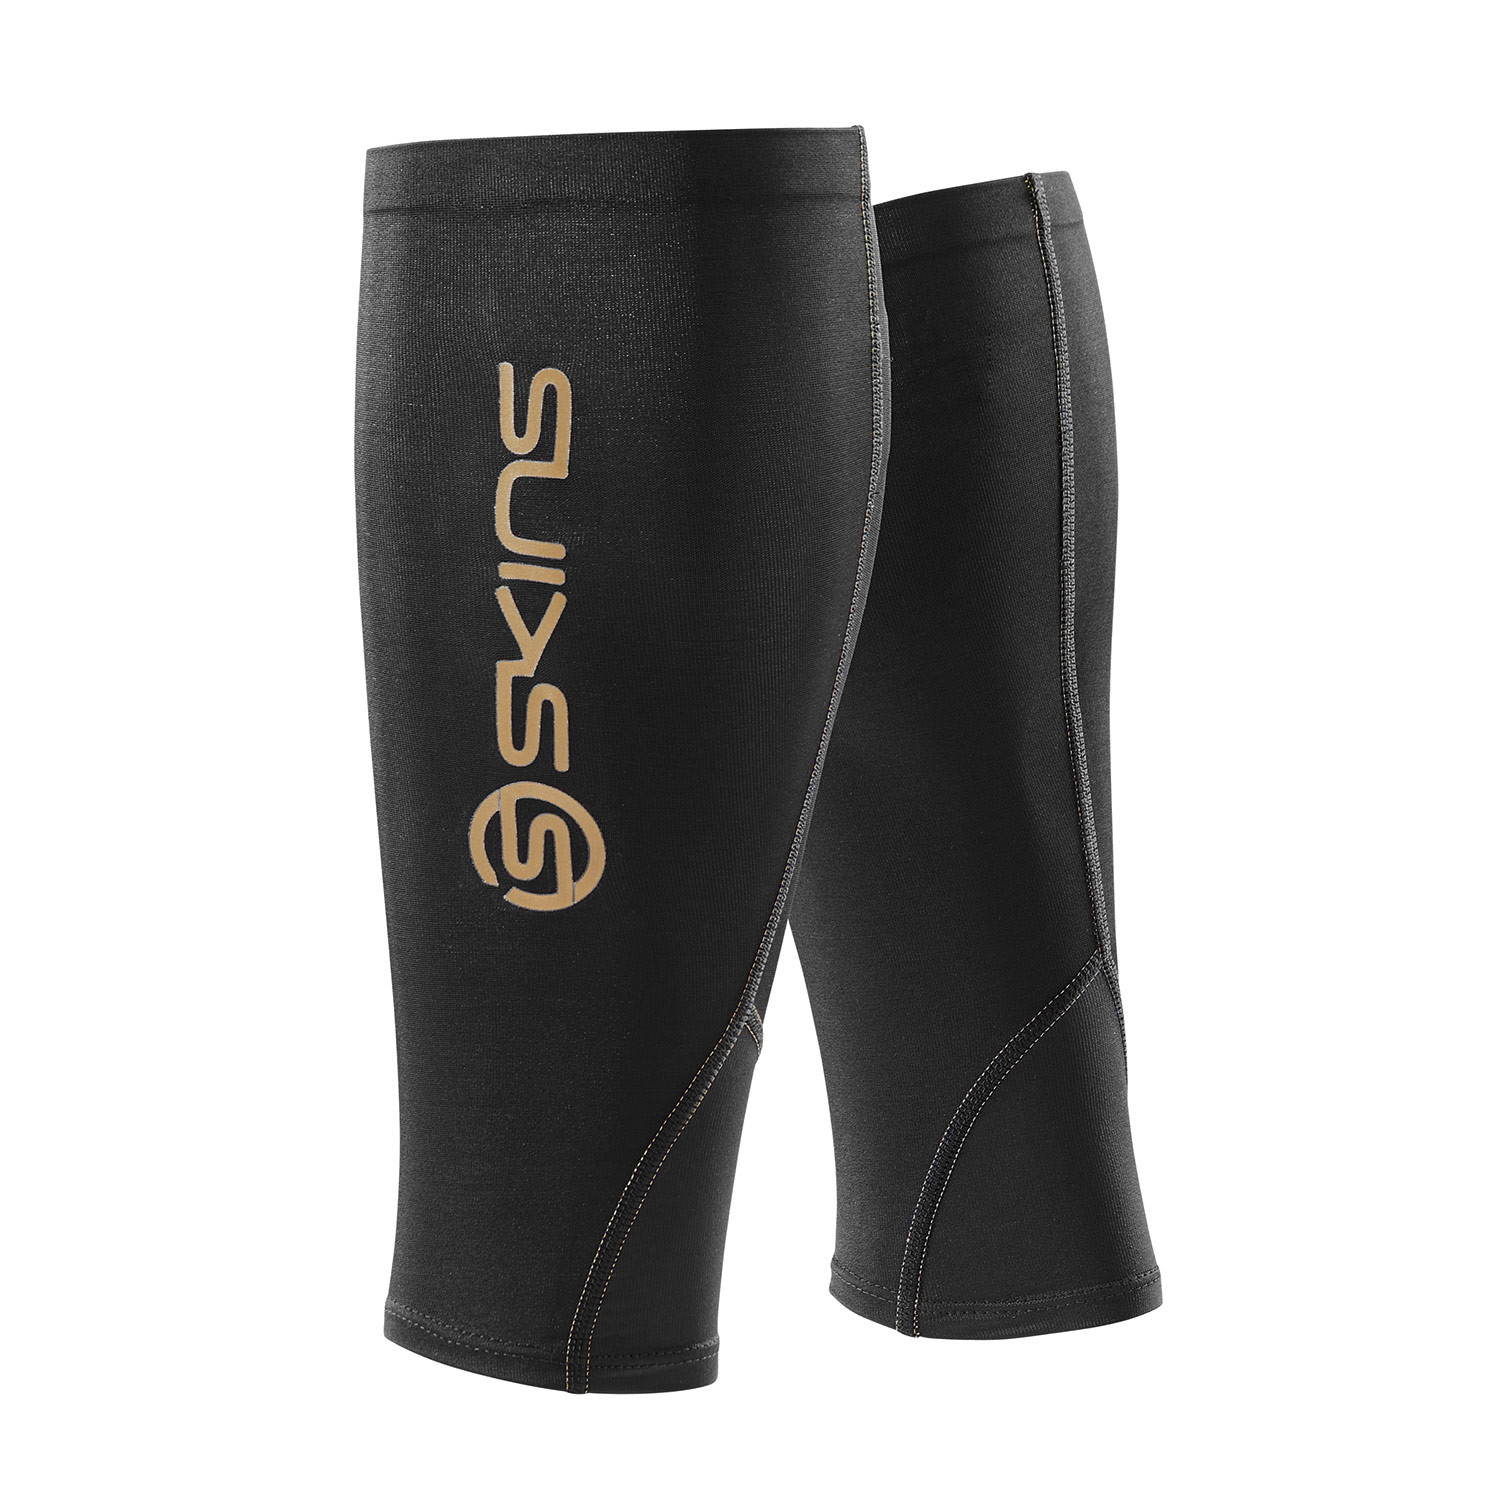 SKINS Essentials Unisex Sleeves, Black, Medium 